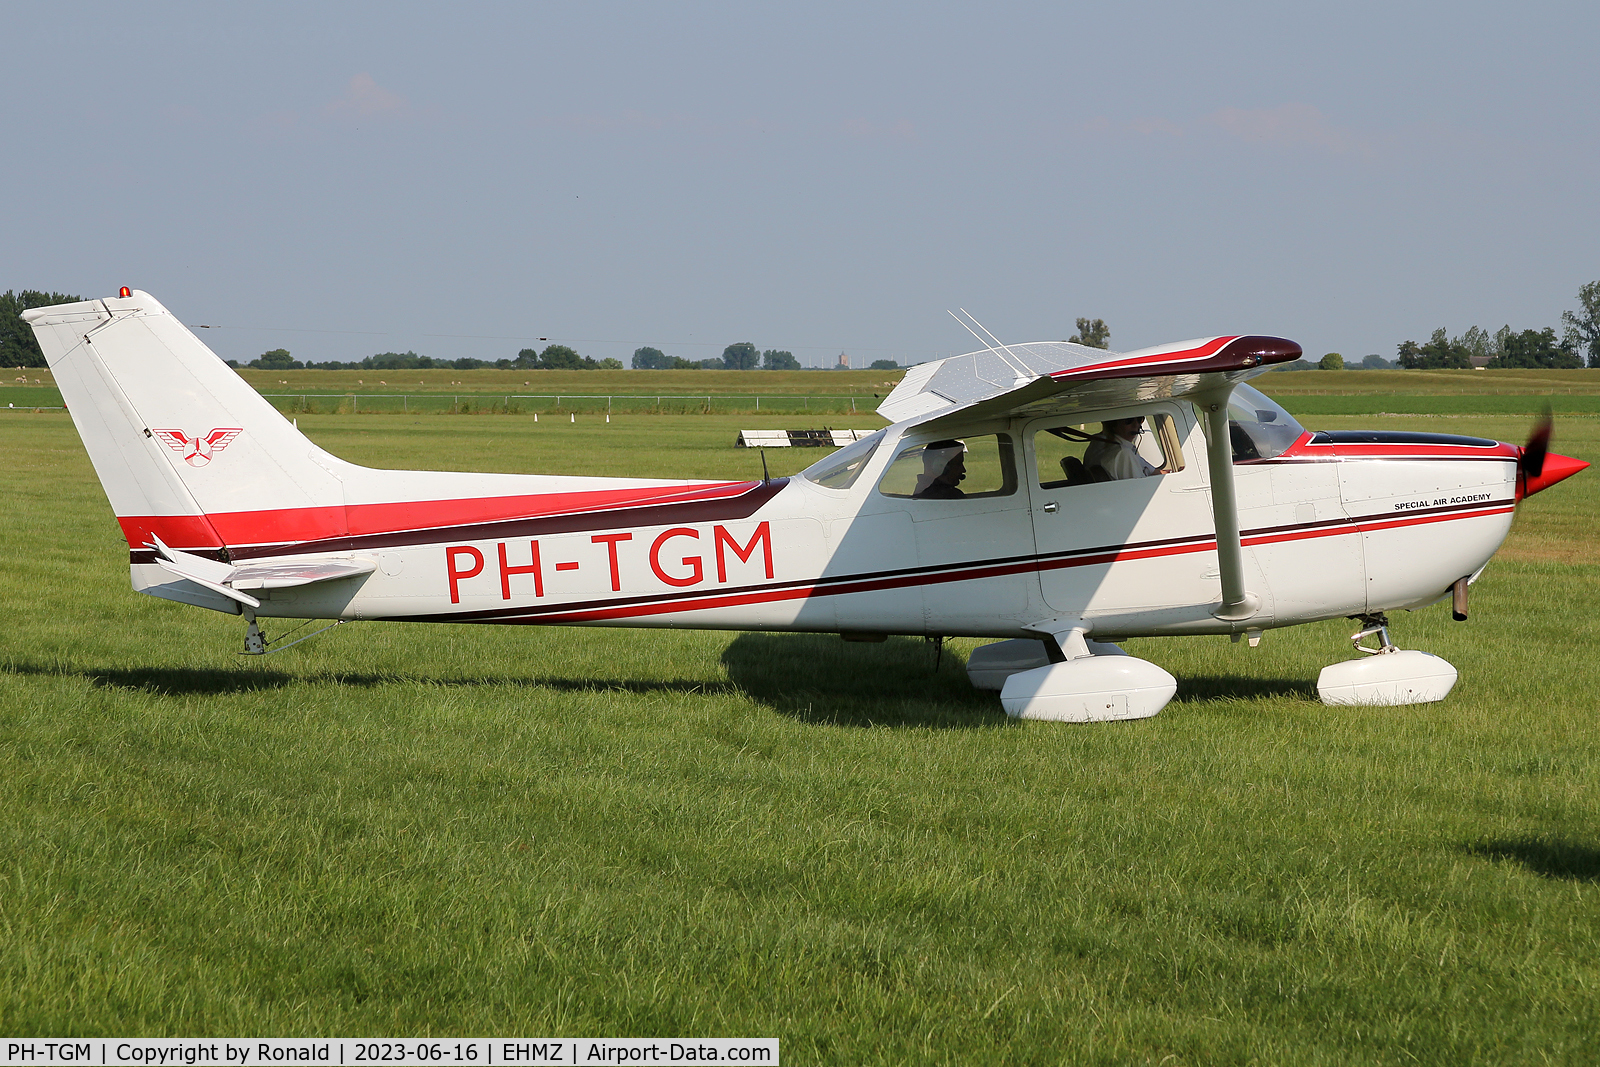 PH-TGM, 1979 Reims F172N Skyhawk C/N 1887, at ehmz